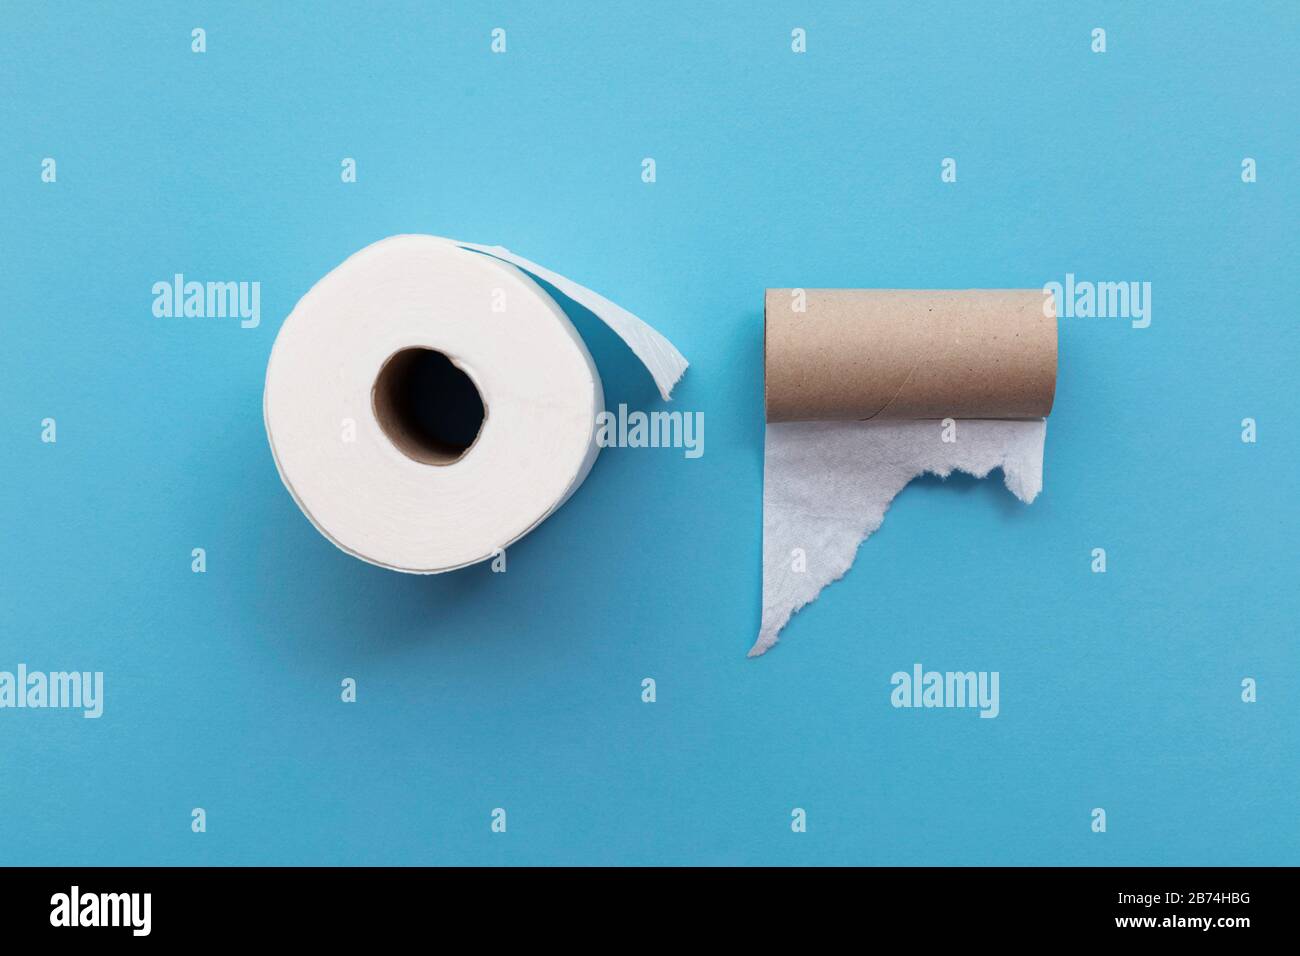 Vider le rouleau de toilette usagé à côté d'un rouleau complet de papier toilette Banque D'Images